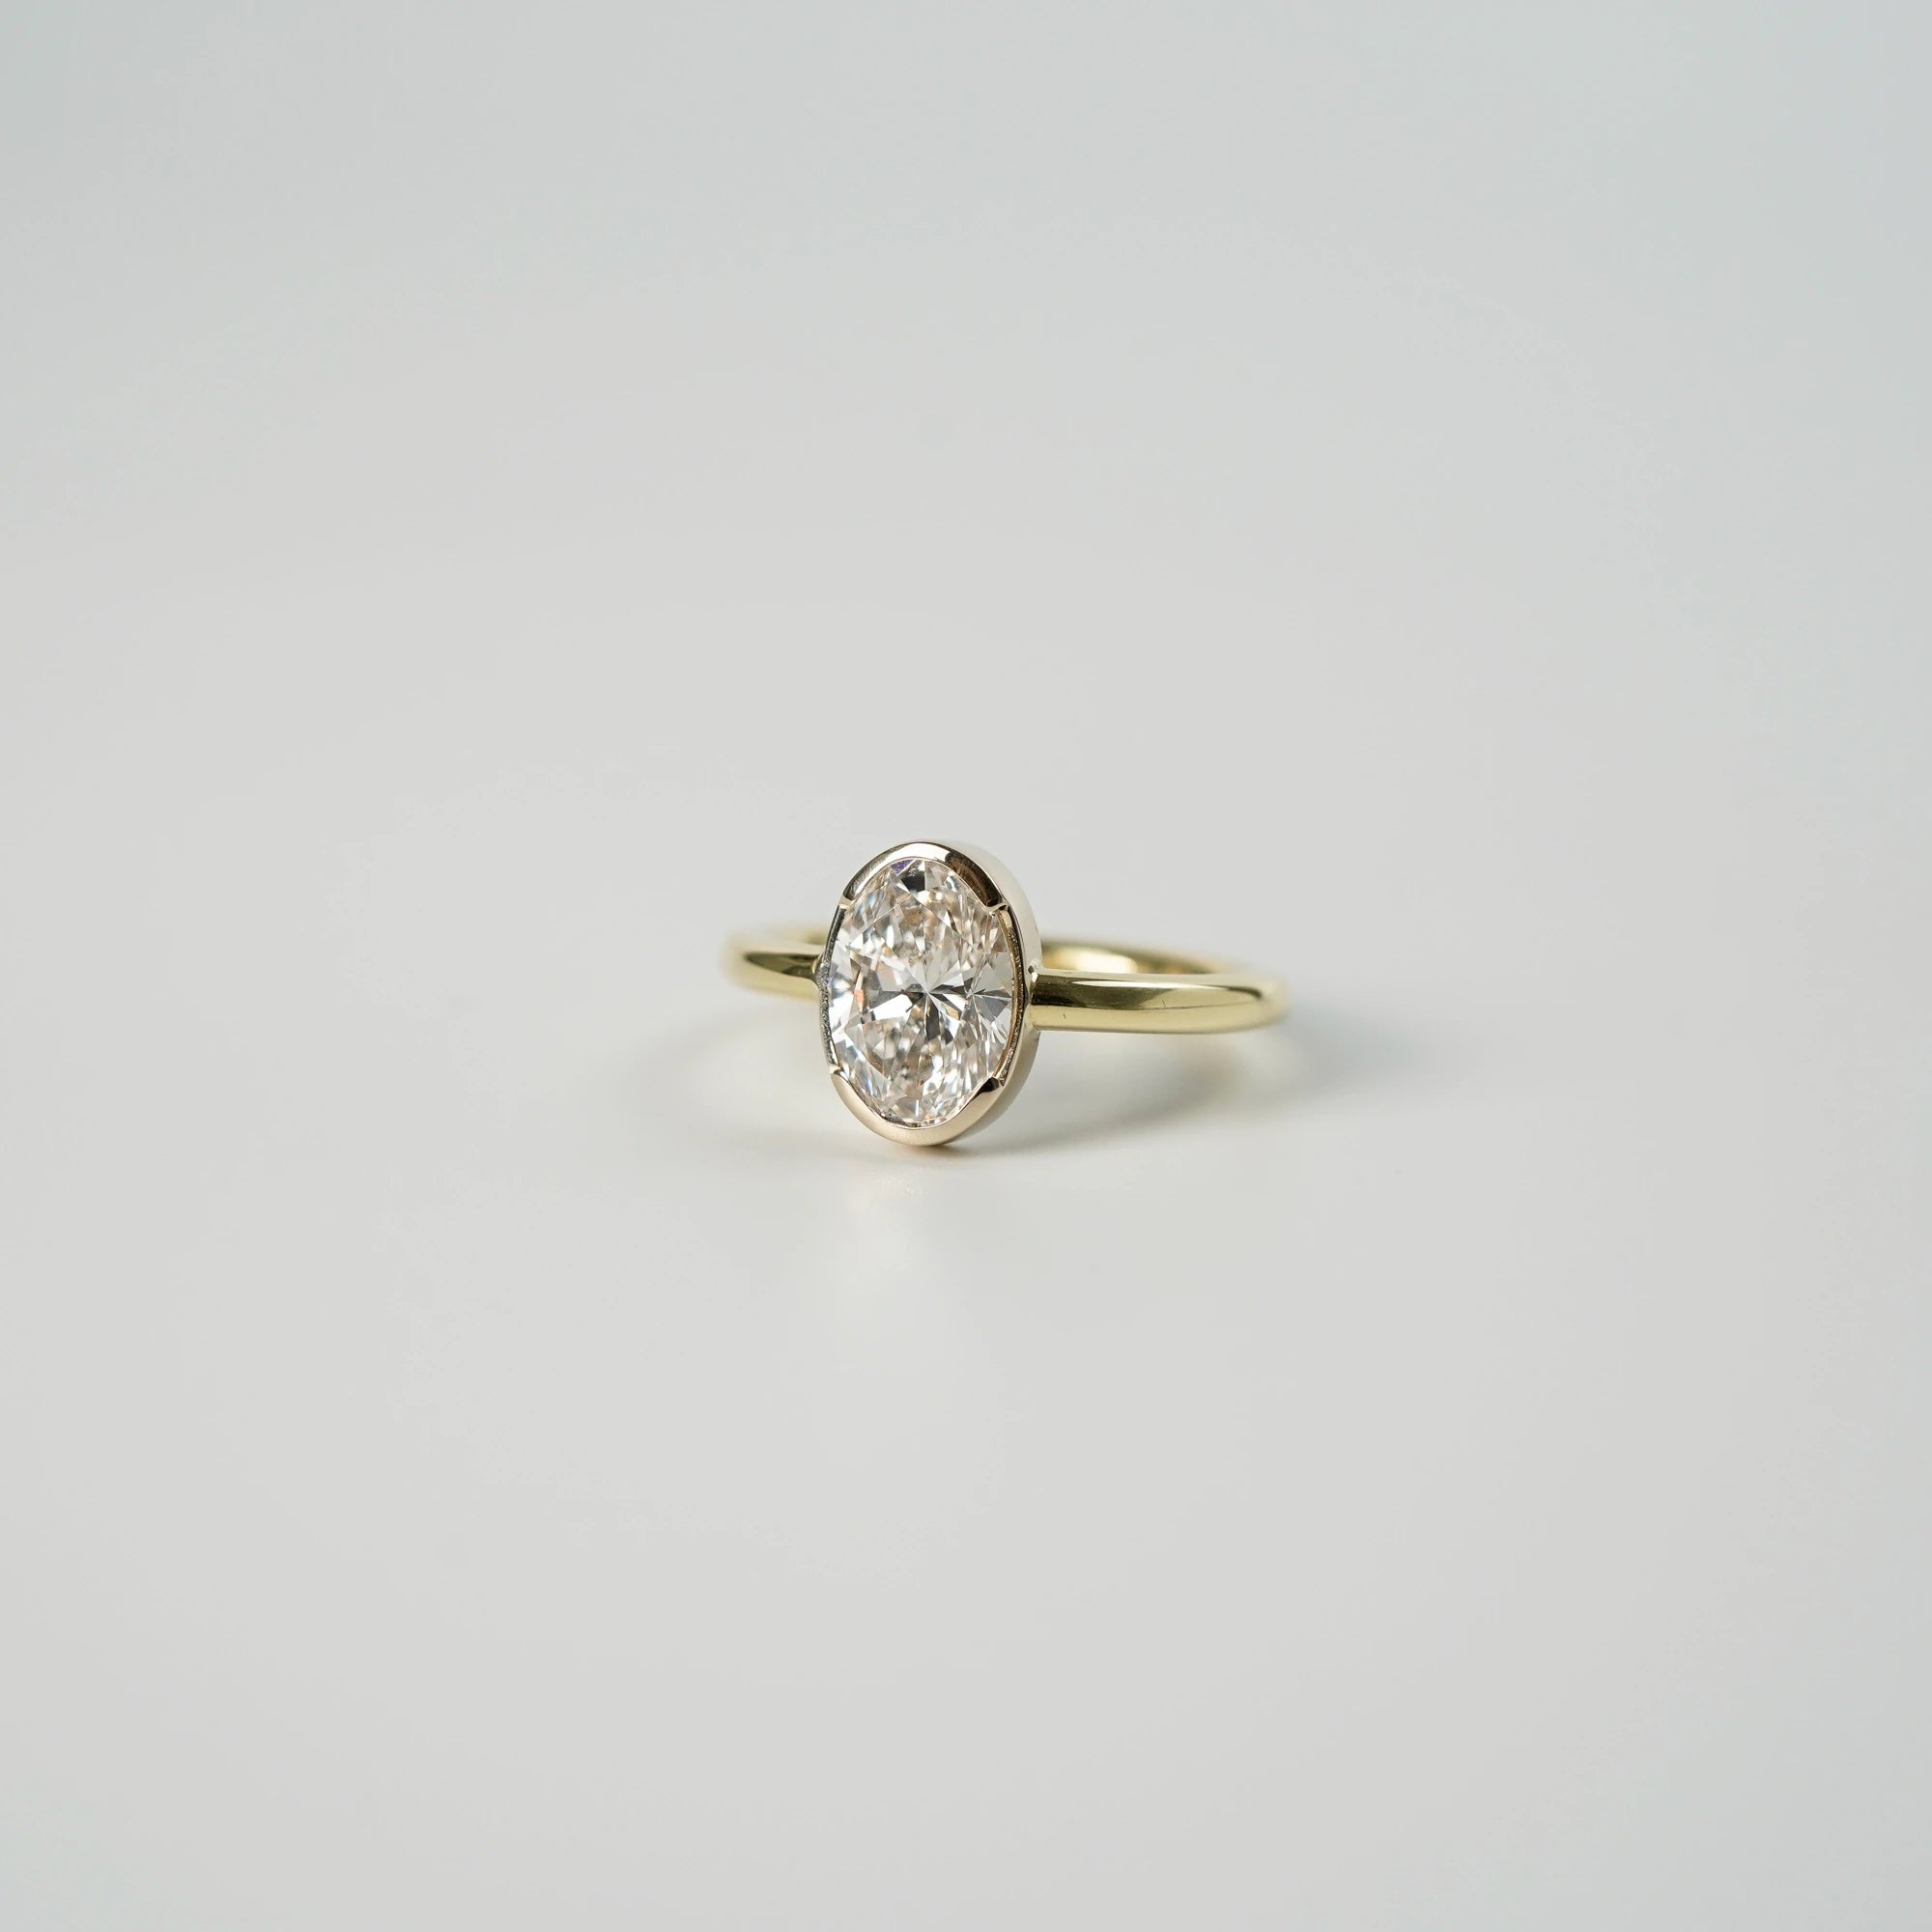 Produktfoto des in Gelbgold gefertigten Verlobungsrings "Gleaming Love" mit einem großen Labor-Diamanten mit 2.03ct (liegend)